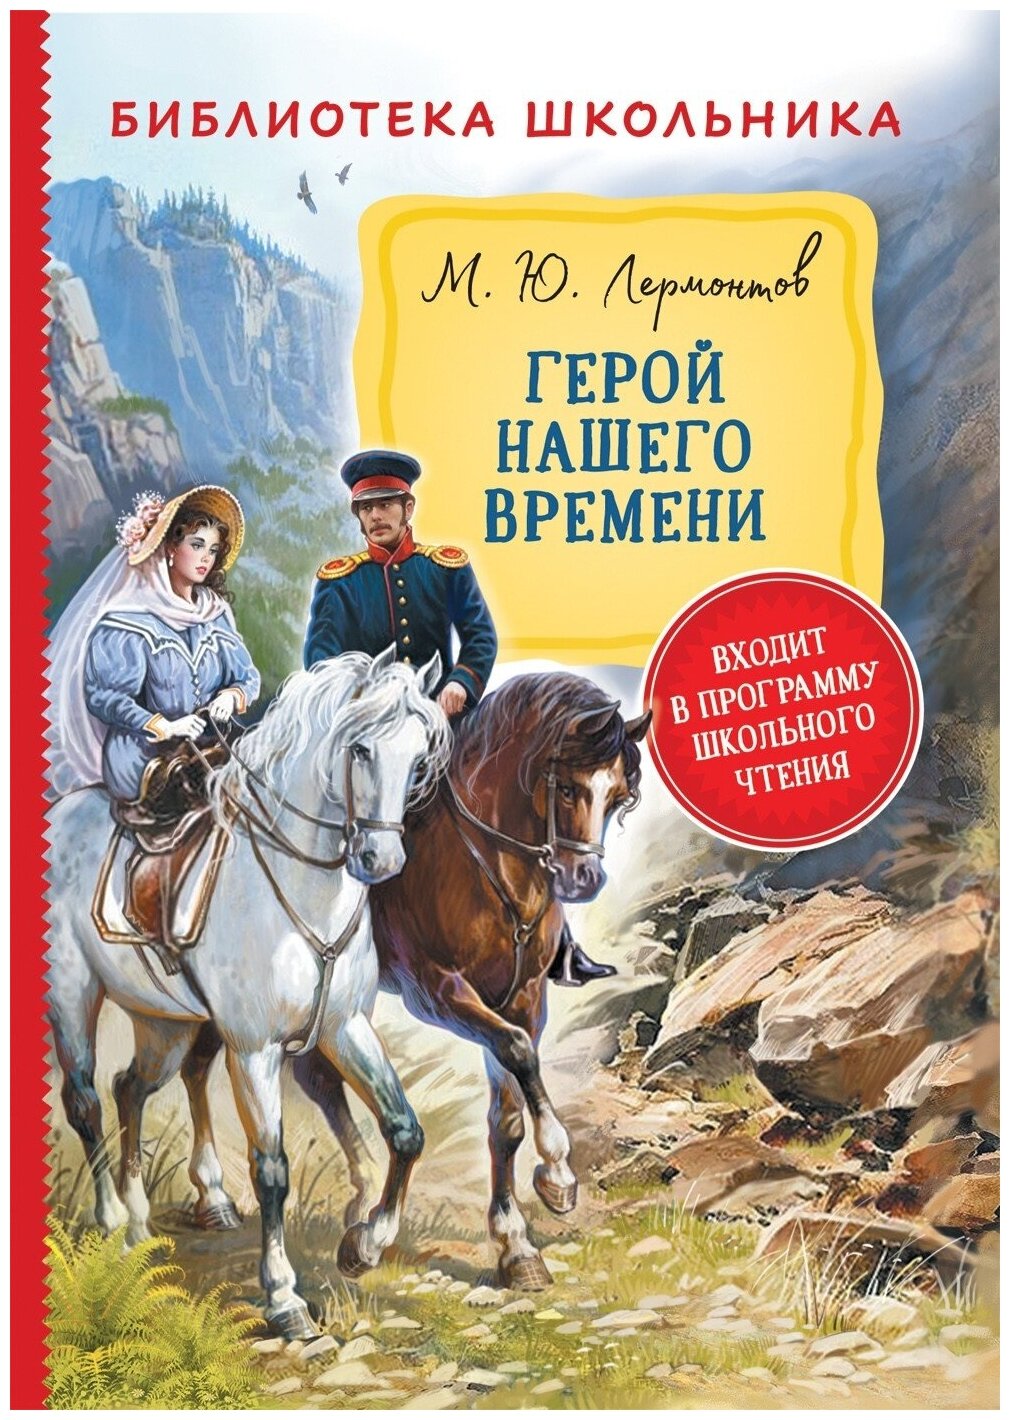 Книга Росмэн Библиотека школьника, Лермонтов М. Ю, "Герой нашего времени"